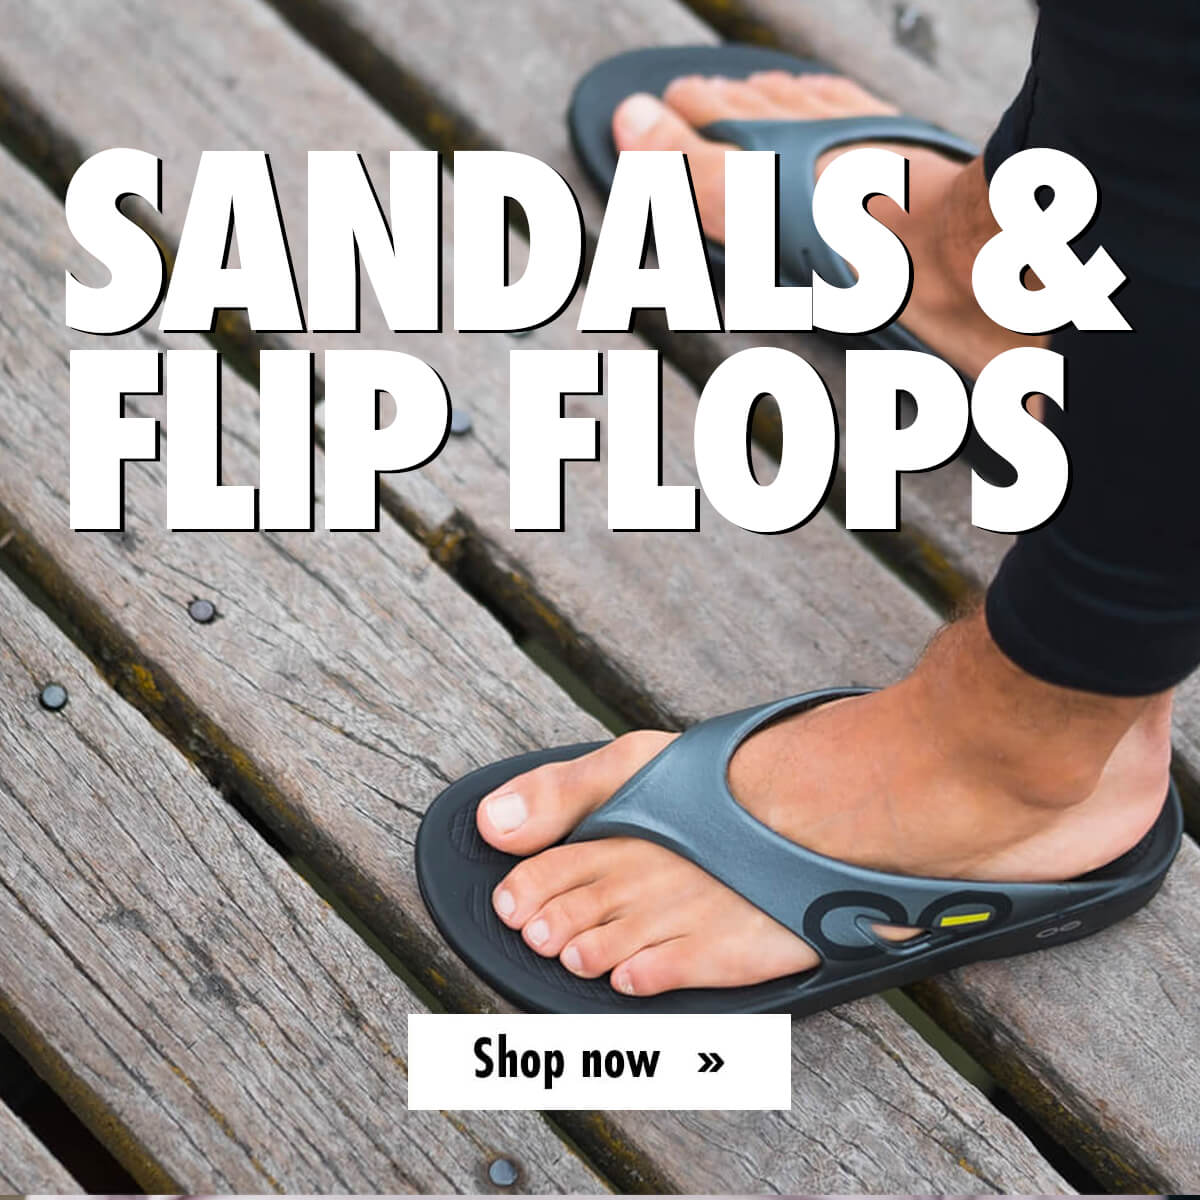 SANDALS & FLIP FLOPS